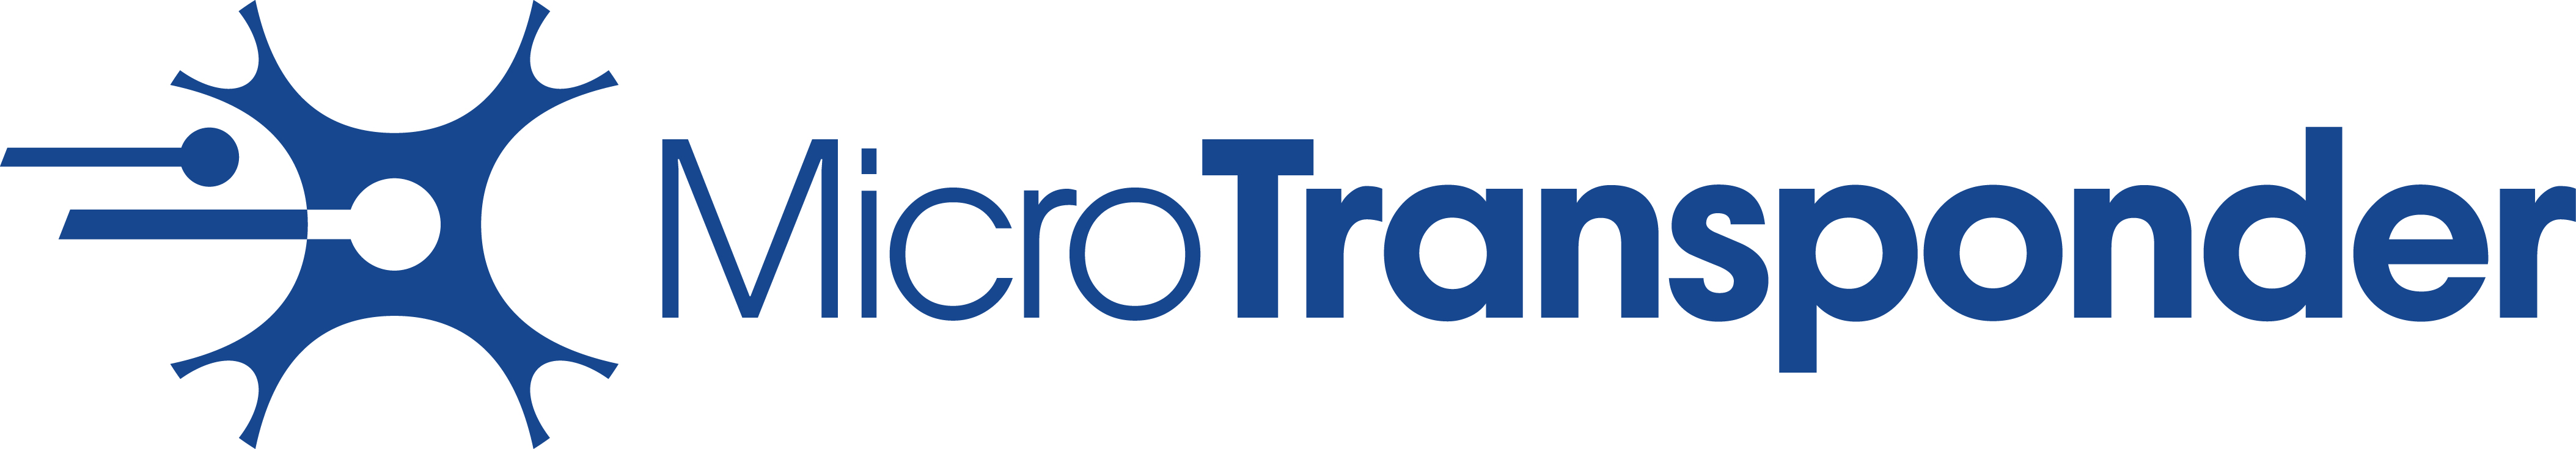 Microtransponder Logo